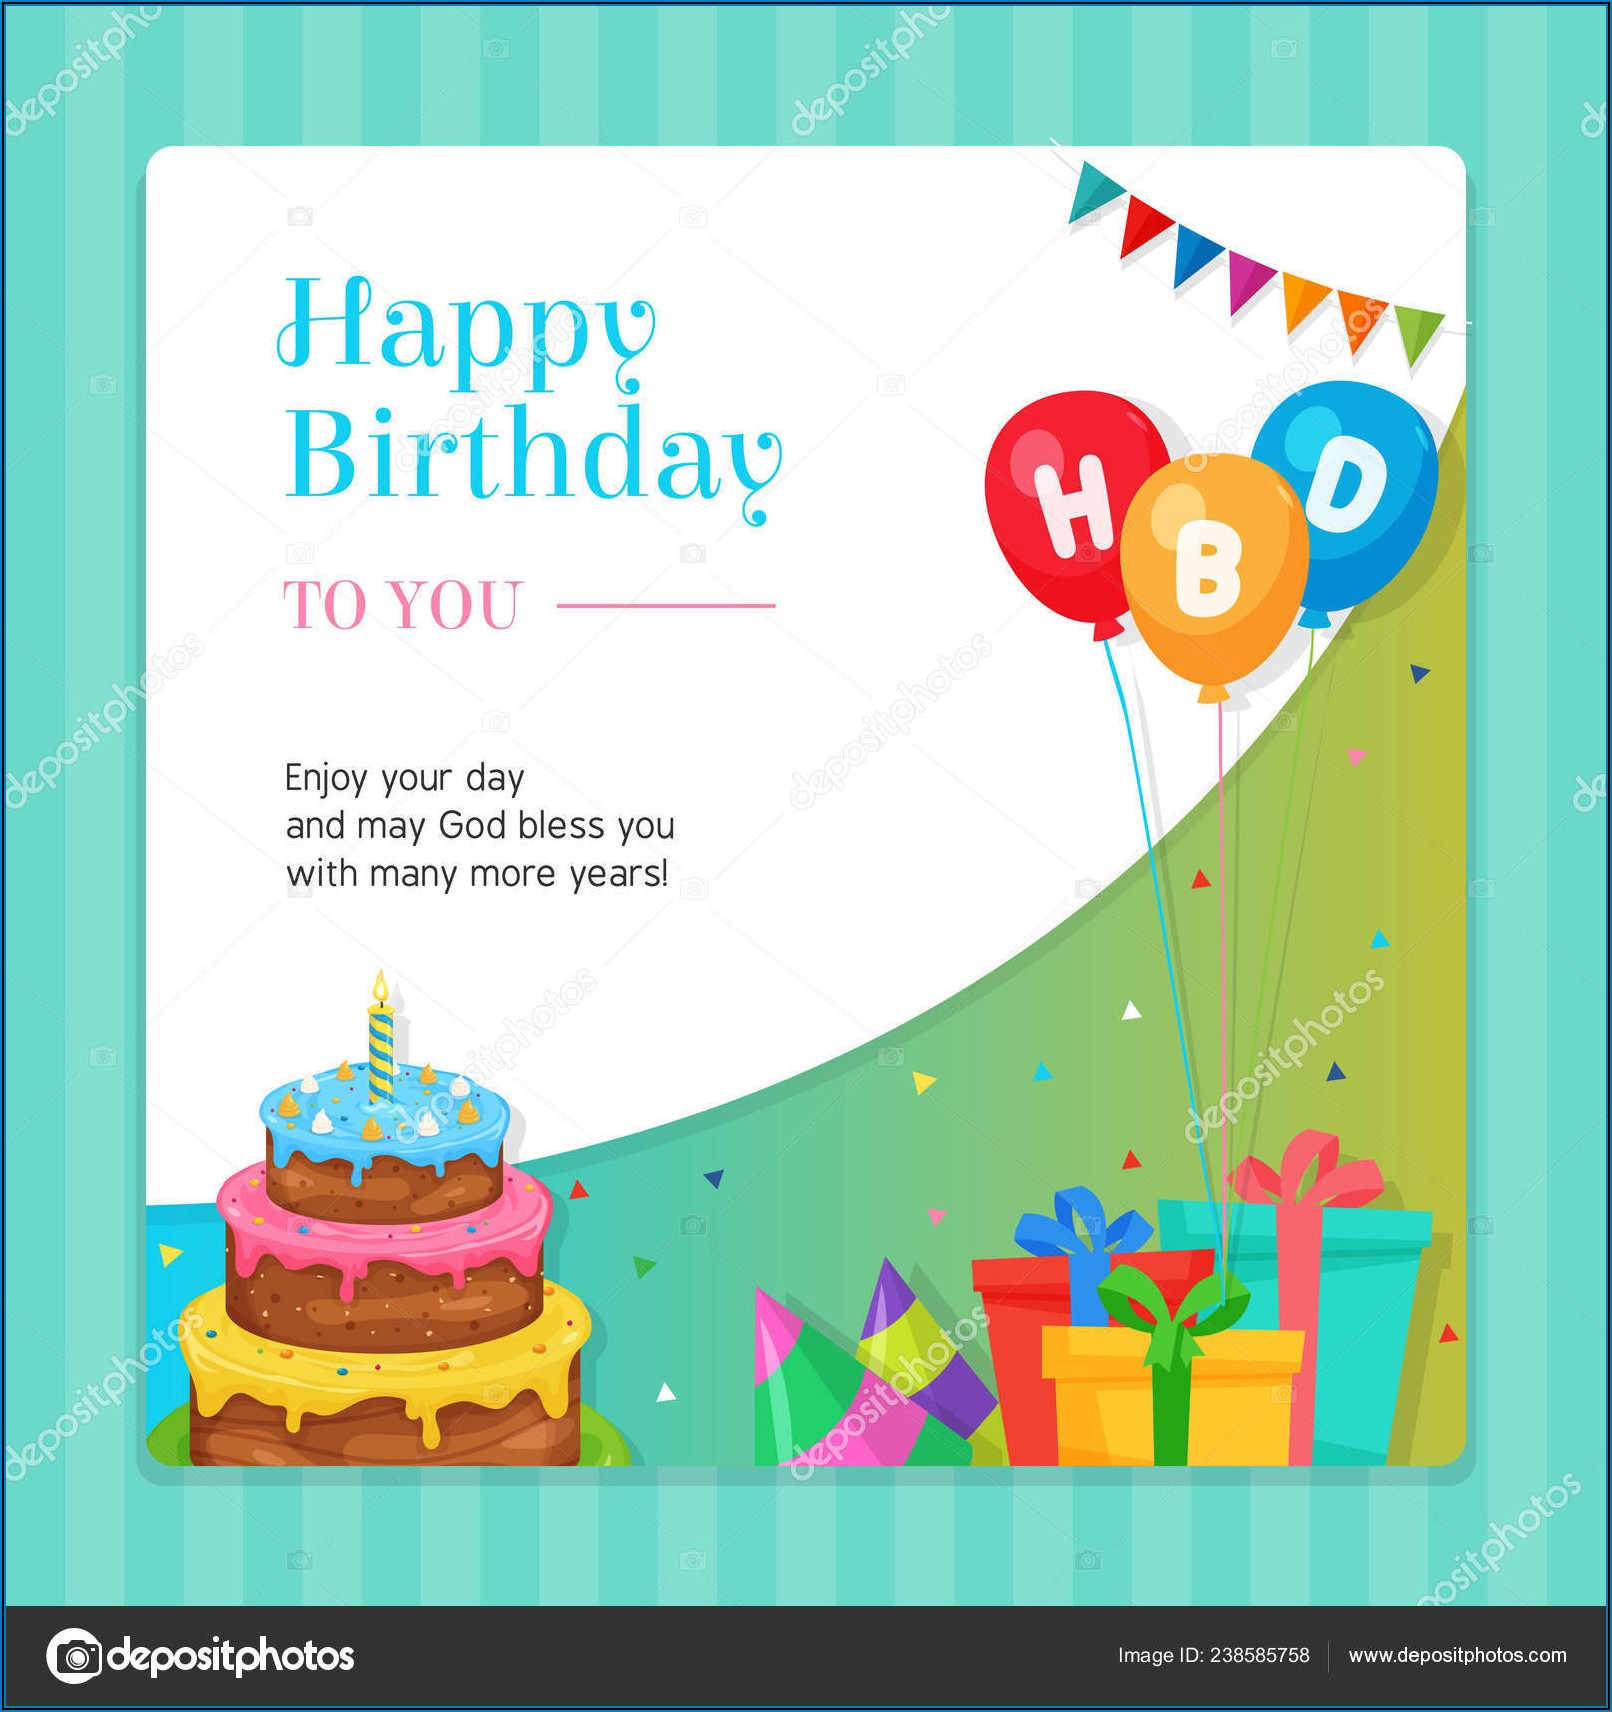 Birthday Invitation Card Design Vector Free Download - Invitations ...